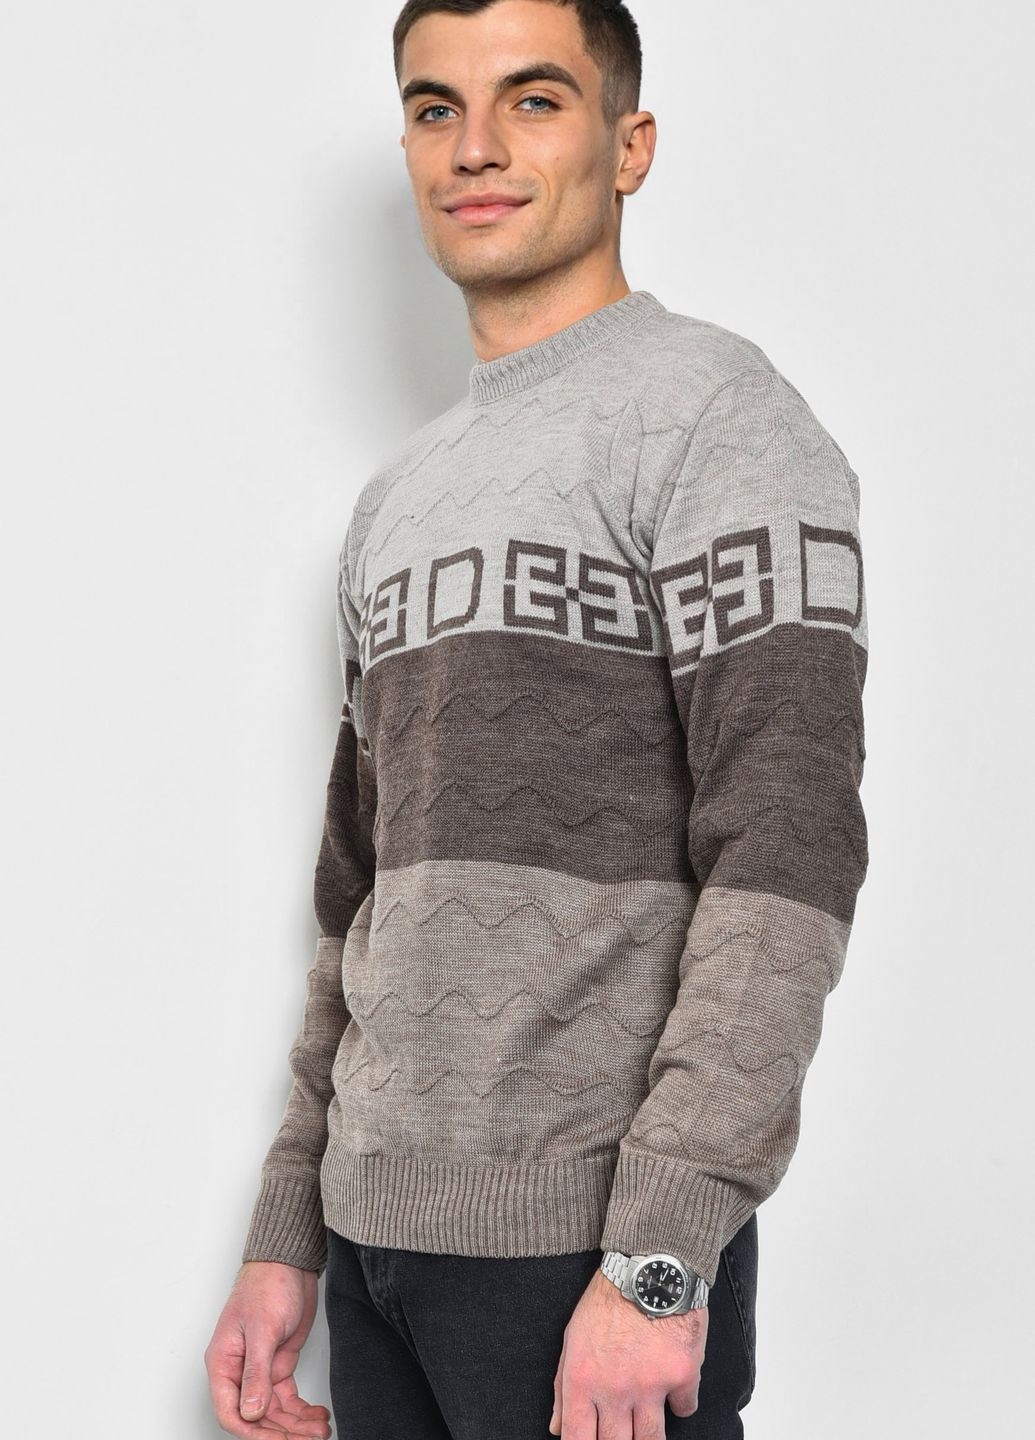 Коричневый демисезонный свитер мужской коричневого цвета пуловер Let's Shop